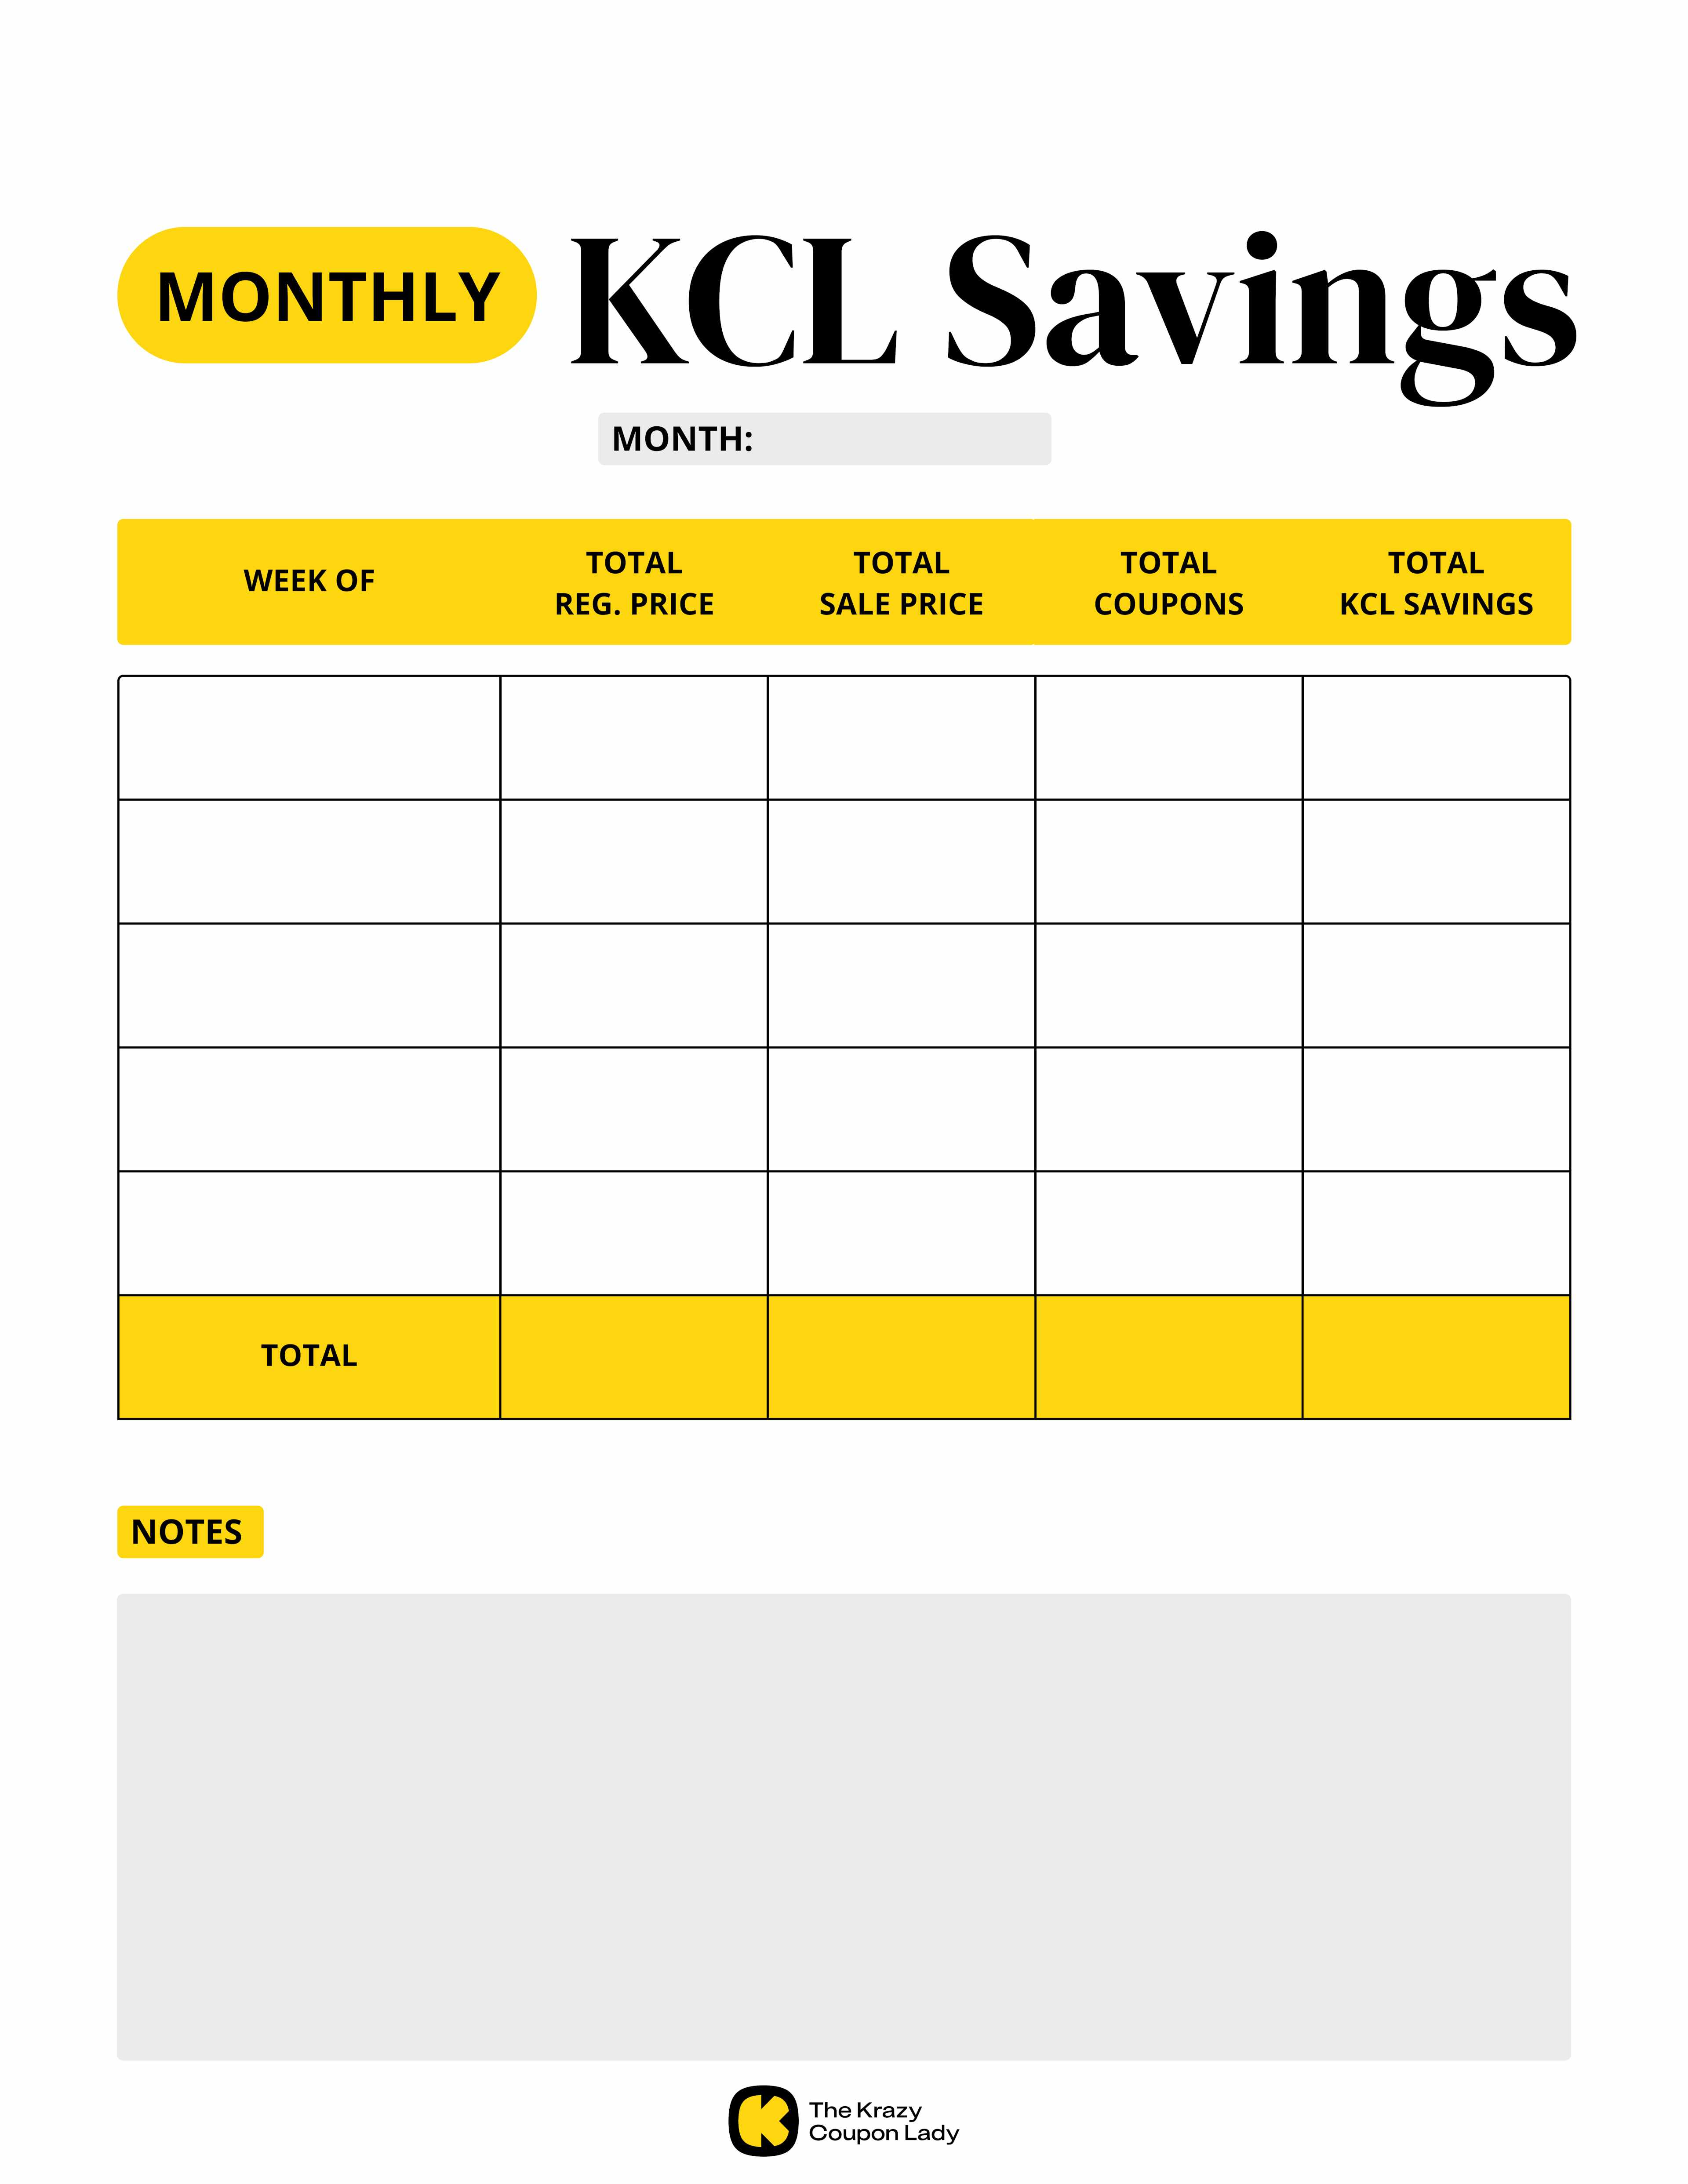 Monthly KCL Savings by Week printable